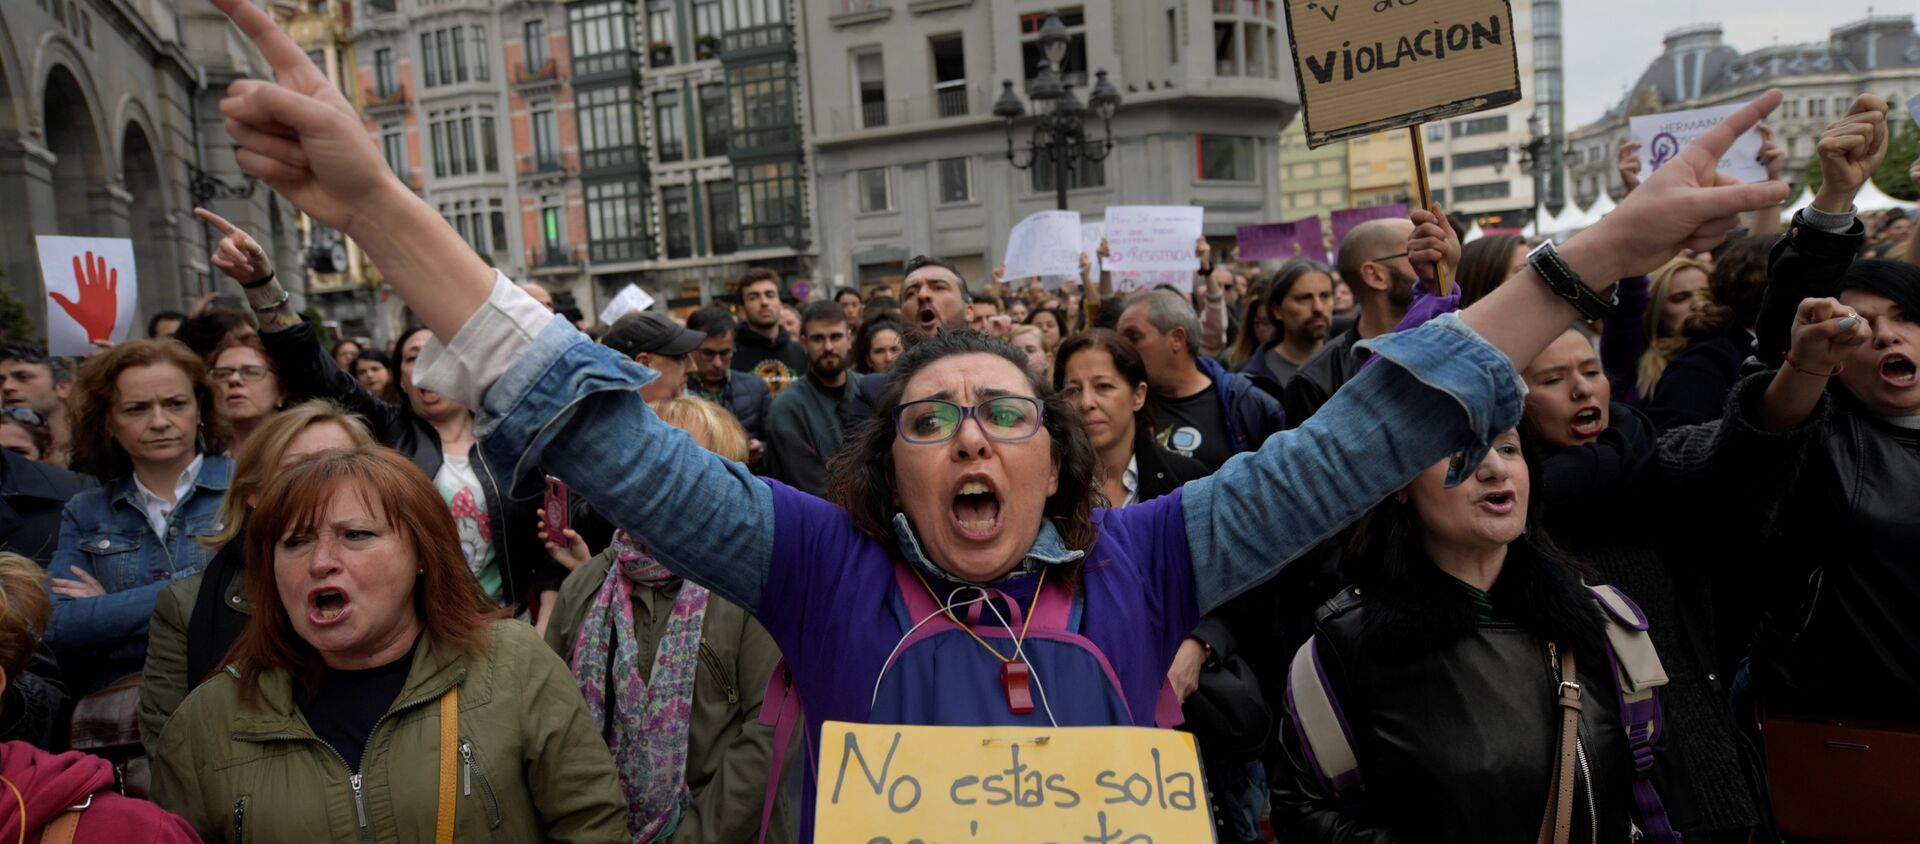 2016'da Pamplona kentindeki San Fermin festivali sırasında 18 yaşındaki bir kadına toplu tecavüzle suçlanan 5 erkeğin cinsel taciz suçundan ceza alması İspanya'nın başkenti Madrid, Barcelona, Sevilla, Bilbao ve Valencia dahil çok sayıda kentte  binlerce kişi tarafından protesto edildi. Kararın verildiği Navarra bölge mahkemesinden yürüyüşe geçen eylemciler de Bu taciz değil tecavüz sloganları attı. Polis eylemcileri mahkeme kapısında durdururken bazı eylemcilerle polis arasında arbede yaşandı. - Sputnik Türkiye, 1920, 27.04.2018